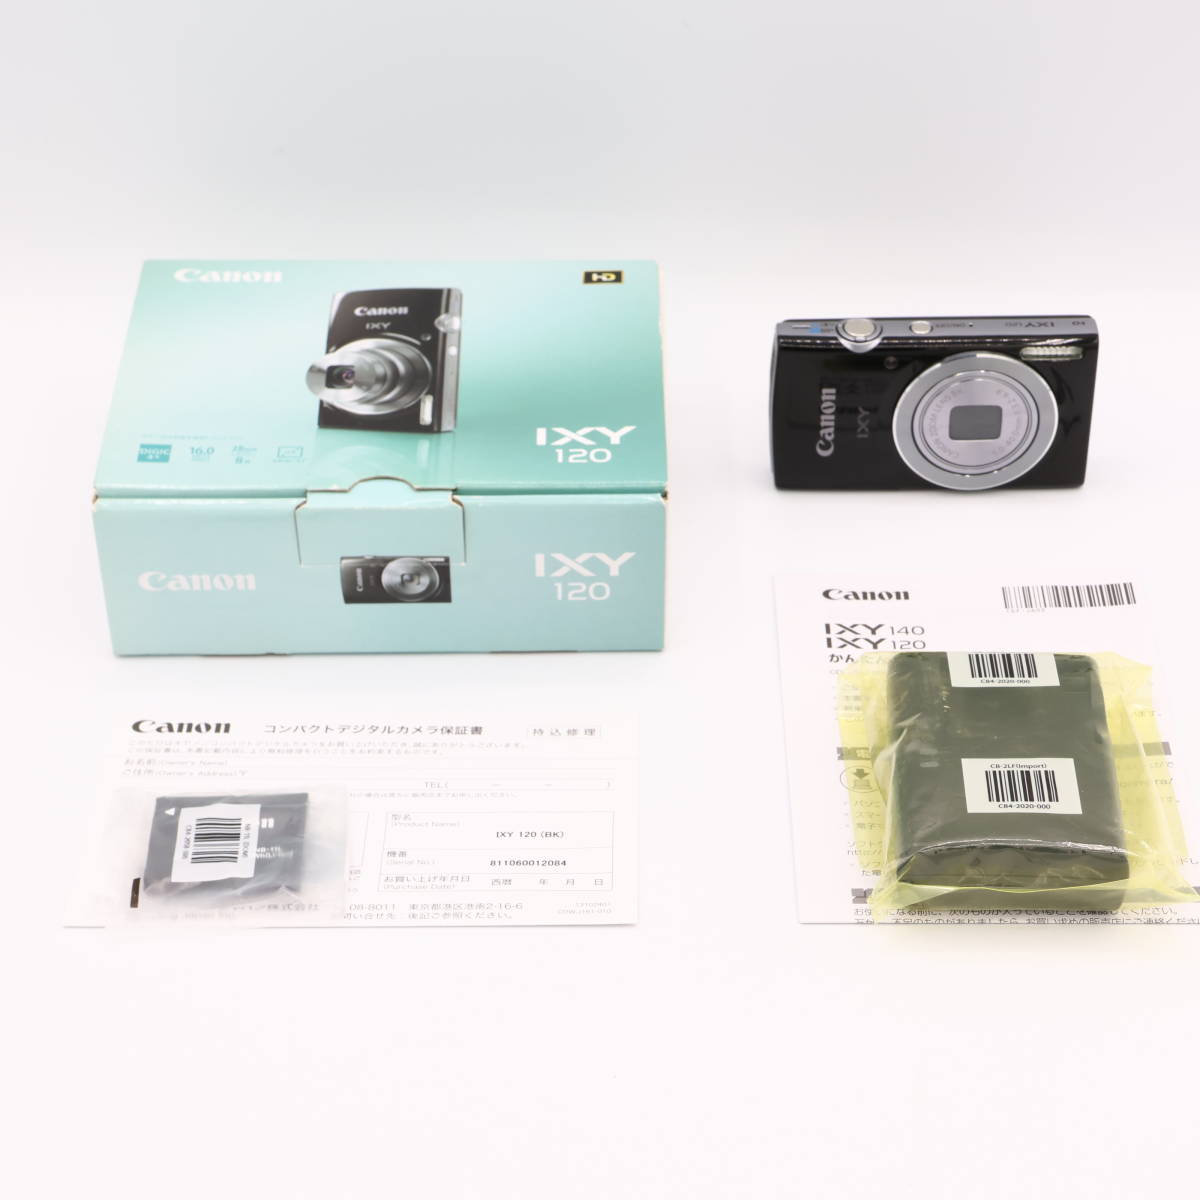 新着商品 Canon IXY デジカメ デジタルカメラ キャノン 150 キヤノン